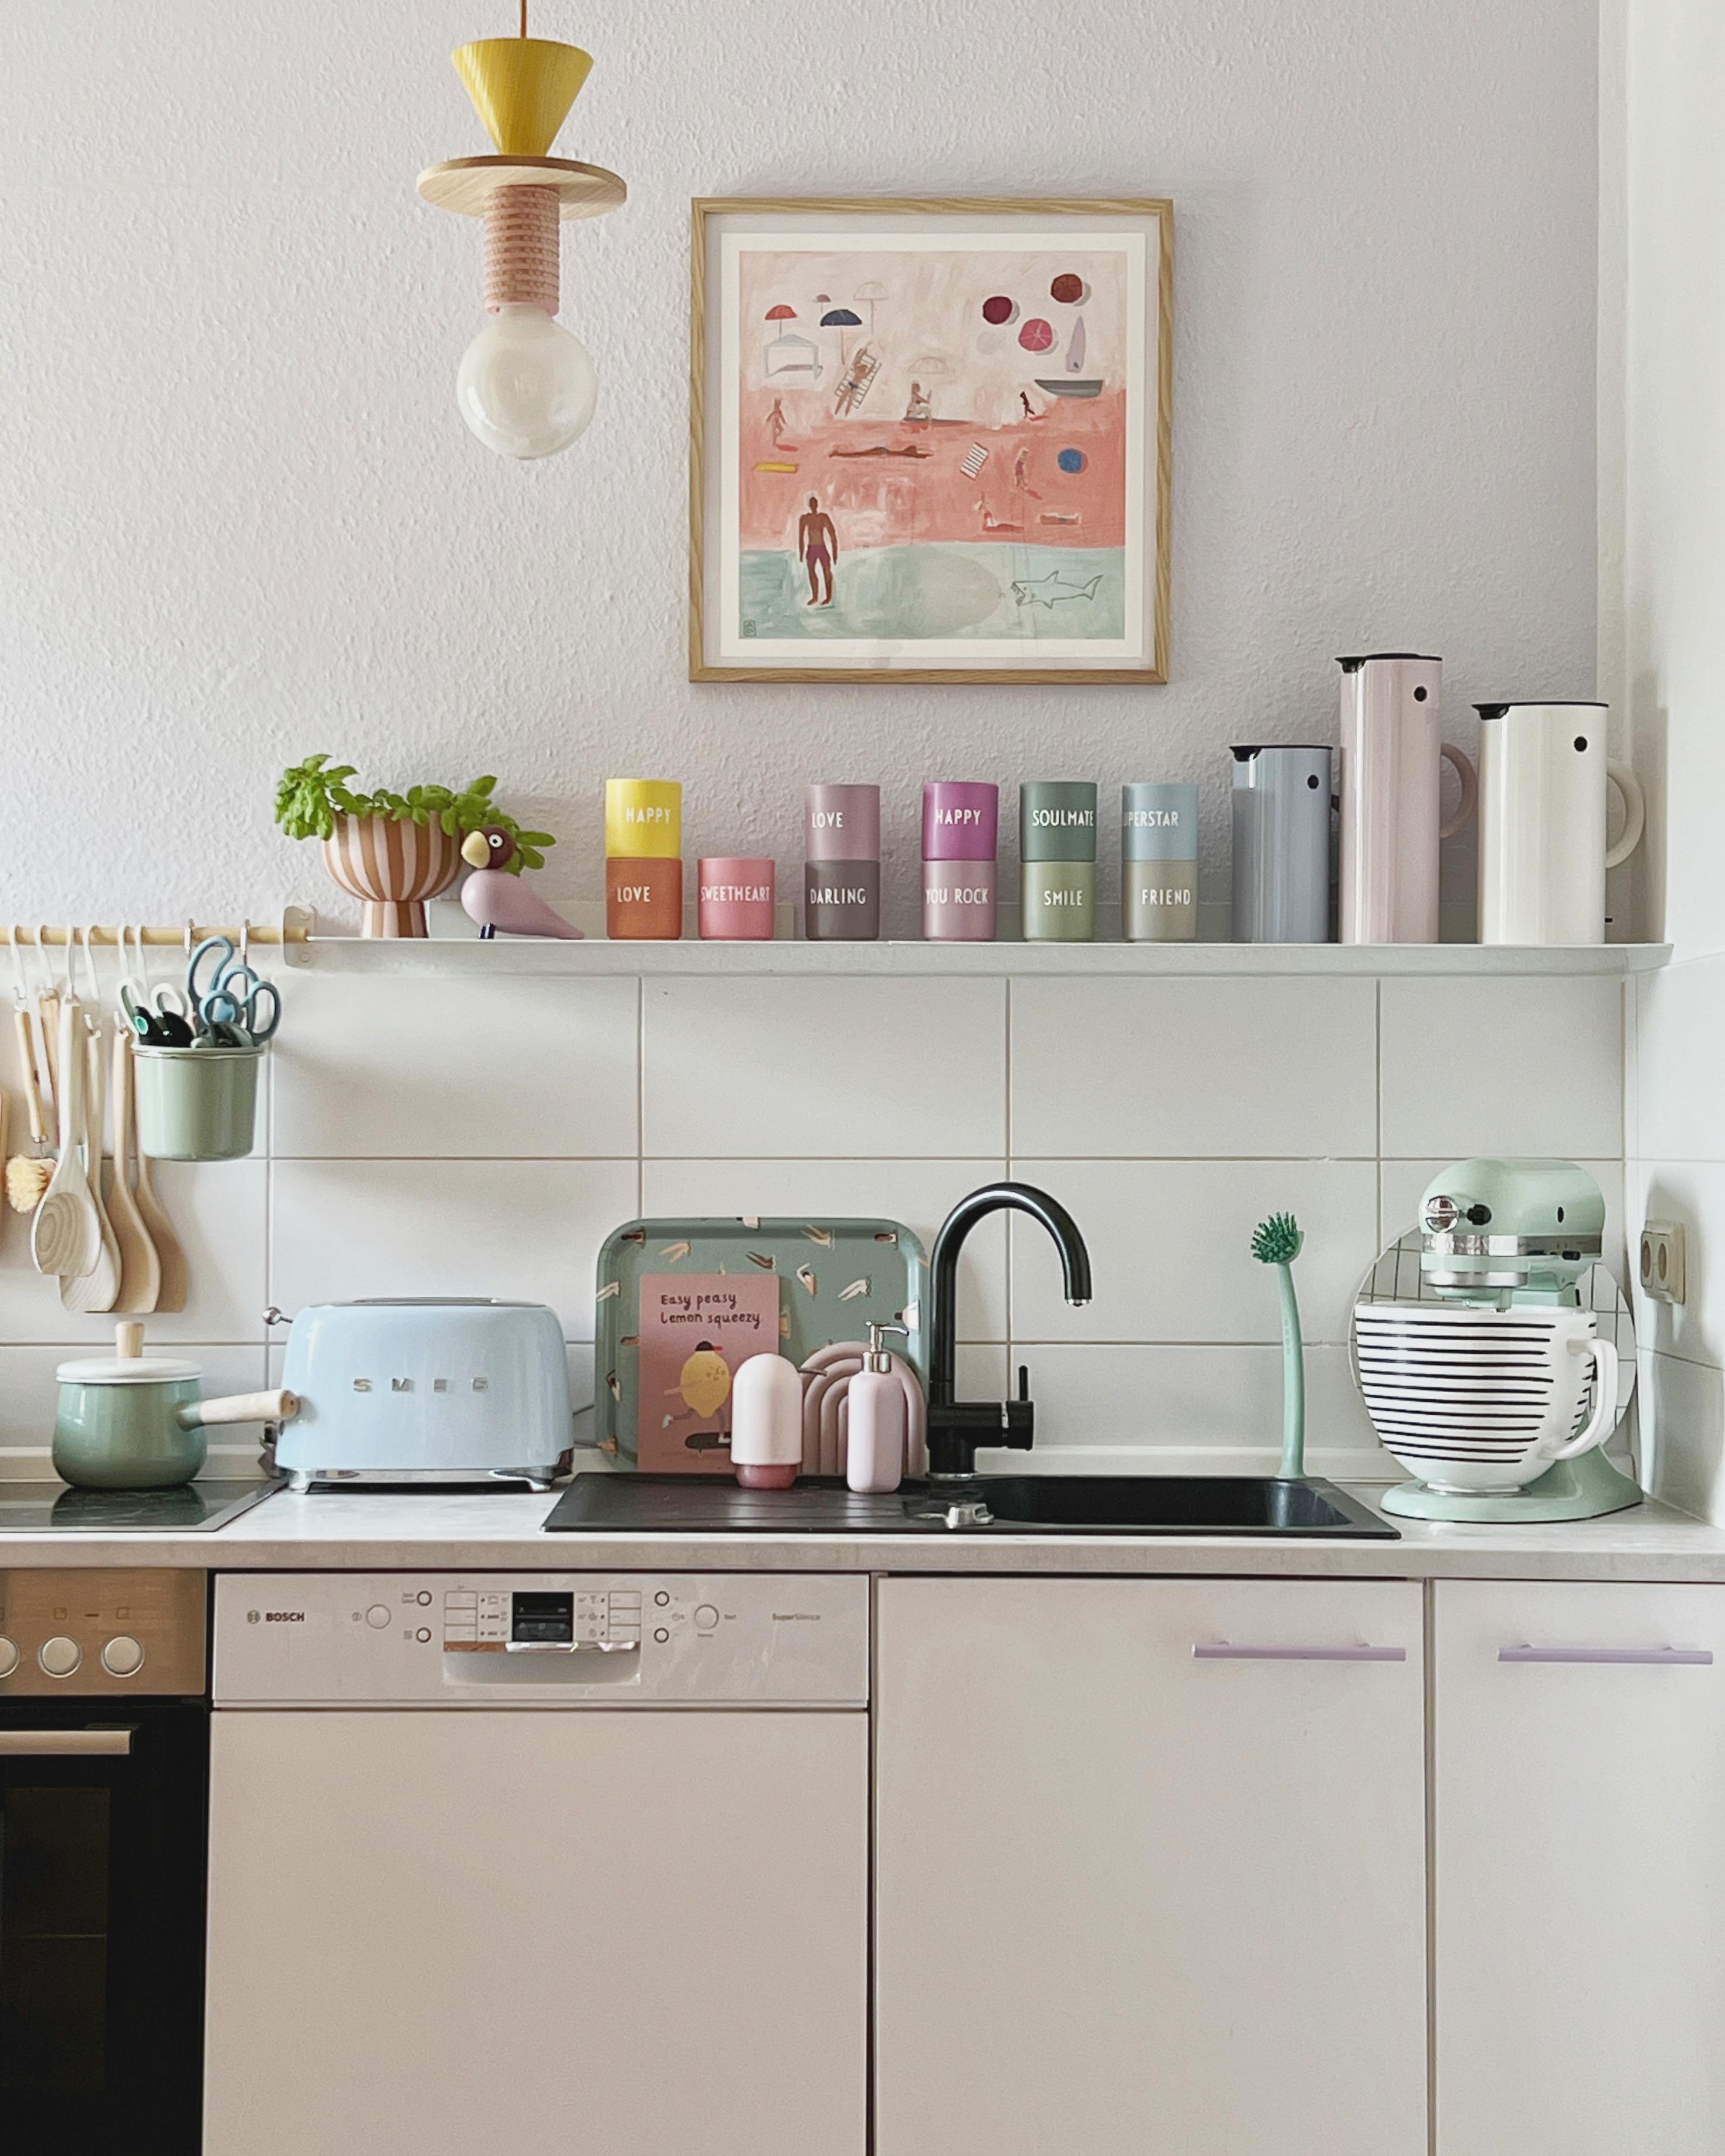 #interior #interiordesign #couchliebt #küche #küchenzeile #clean #pastell #stelton #designletters #smeg #rosa 